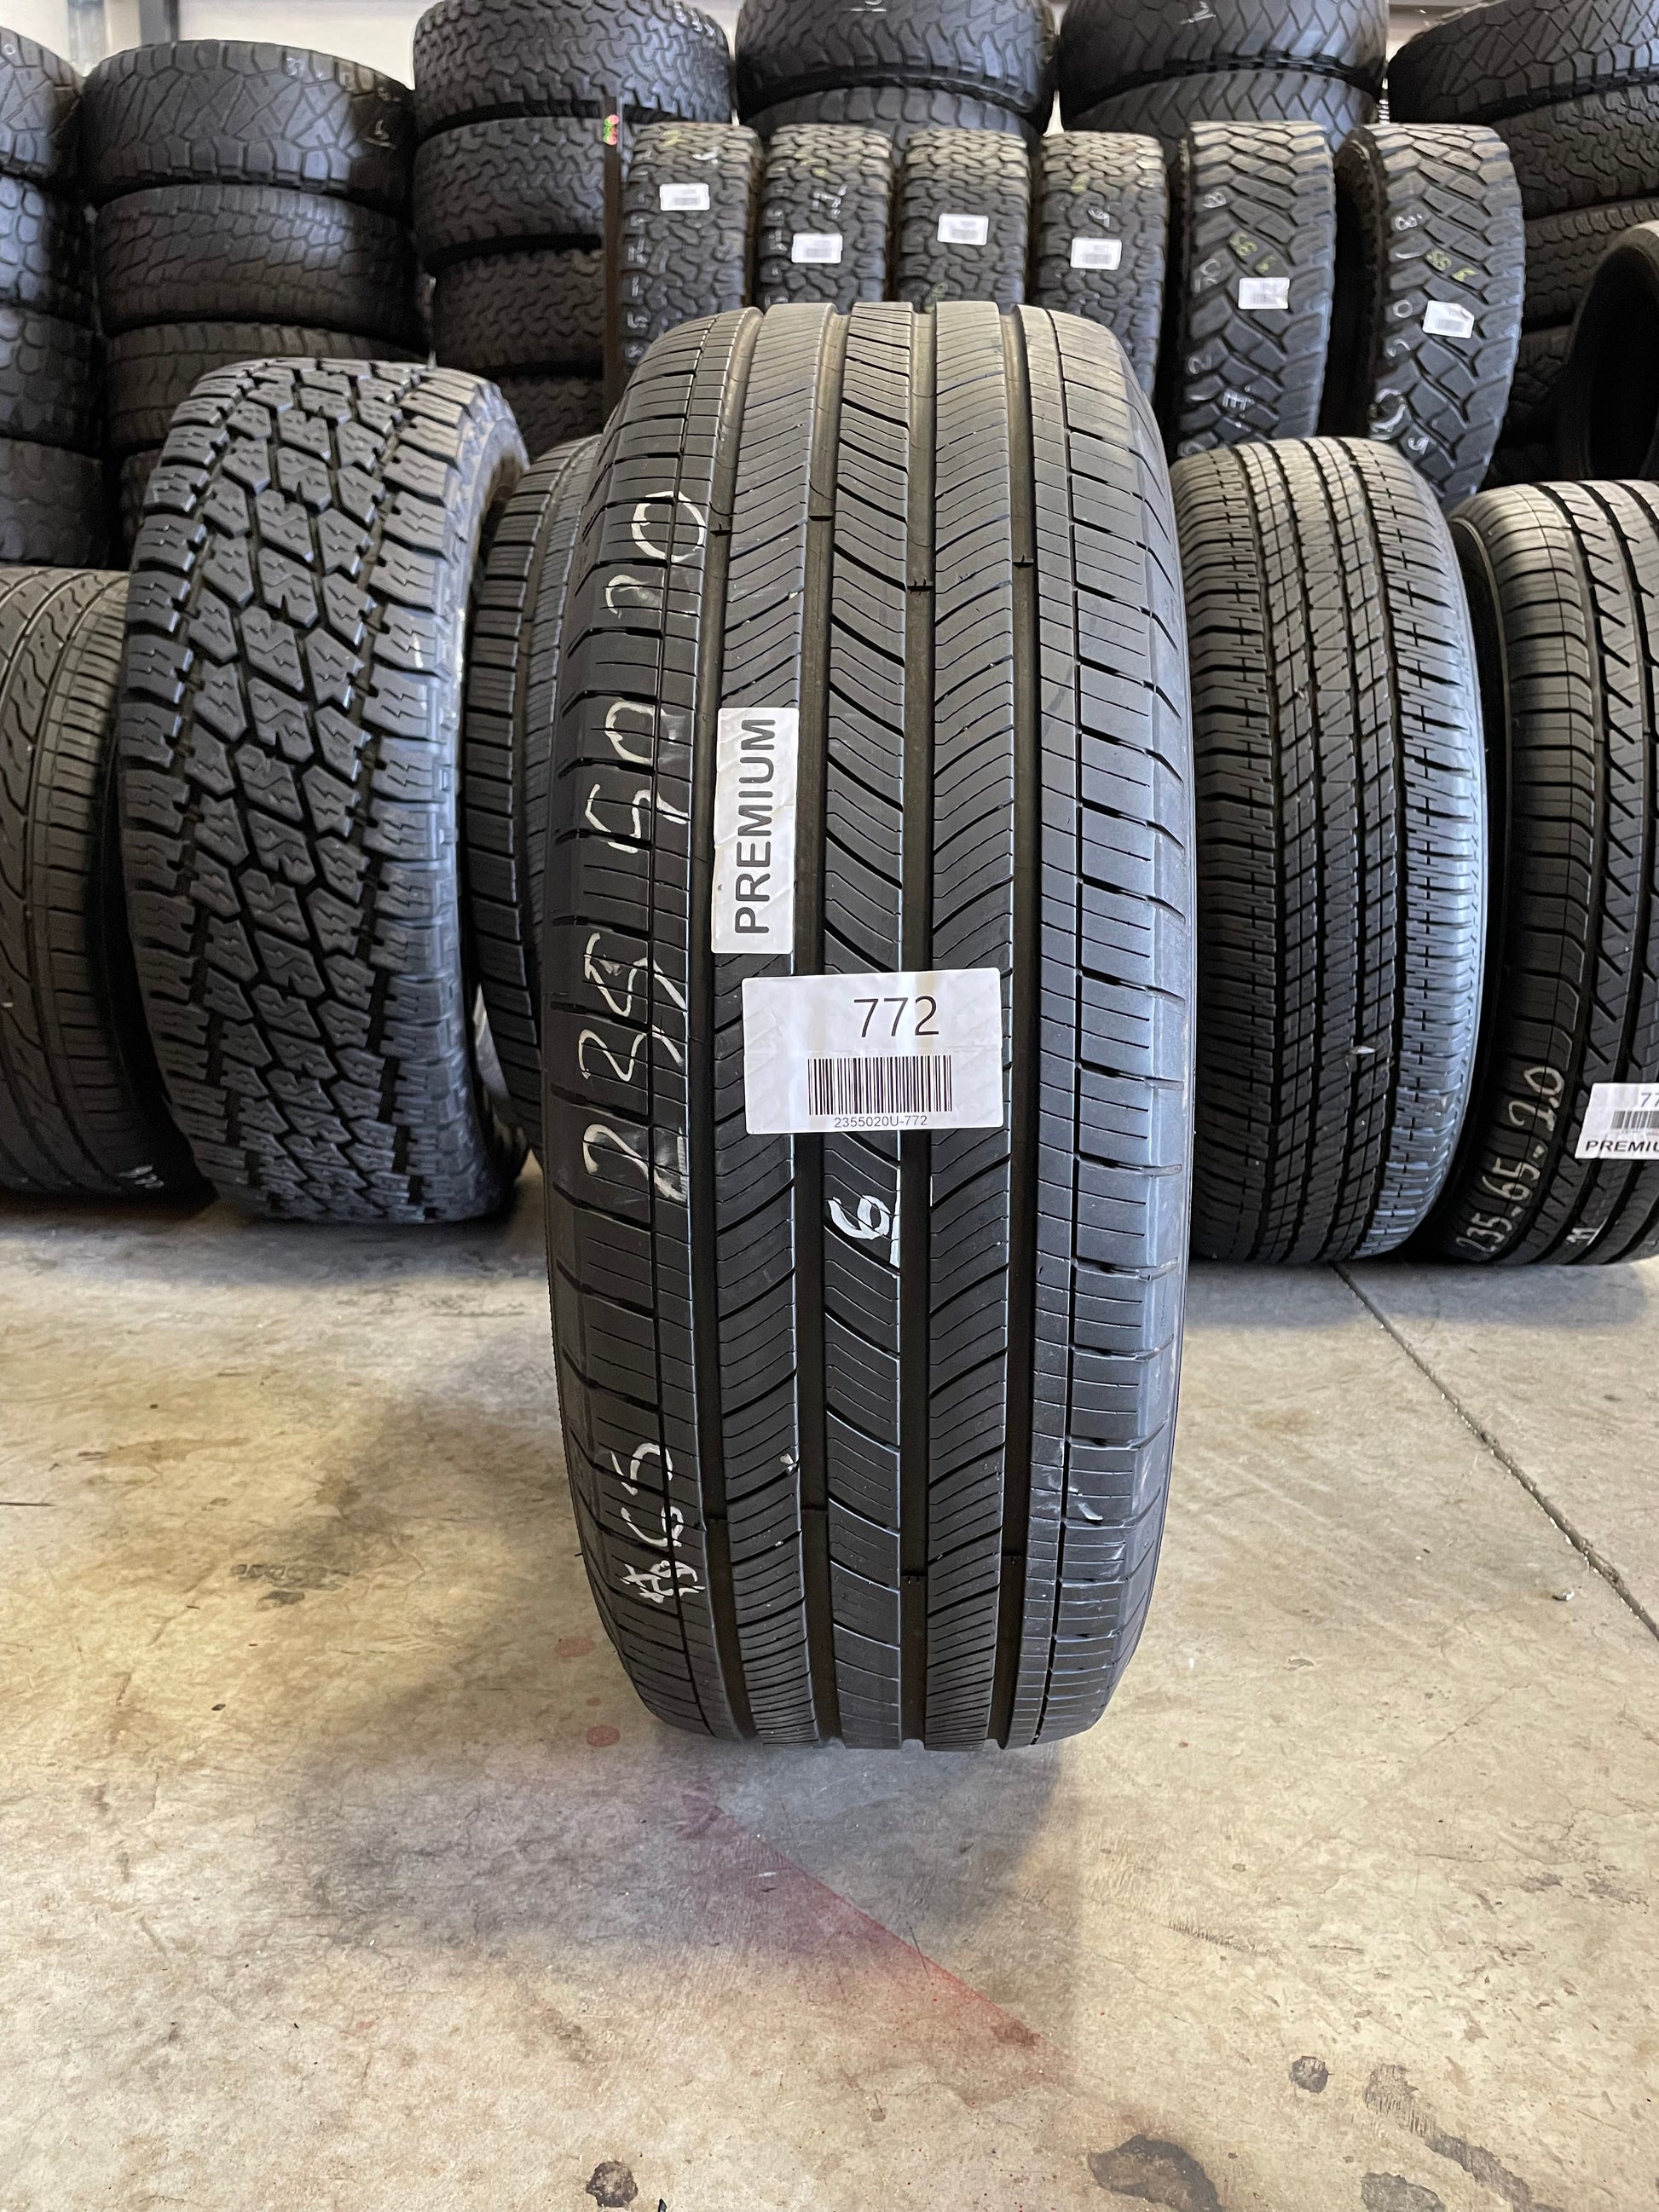 SINGLE 235/50R20 Michelin Primacy A/S 100 V SL - Premium Used Tires